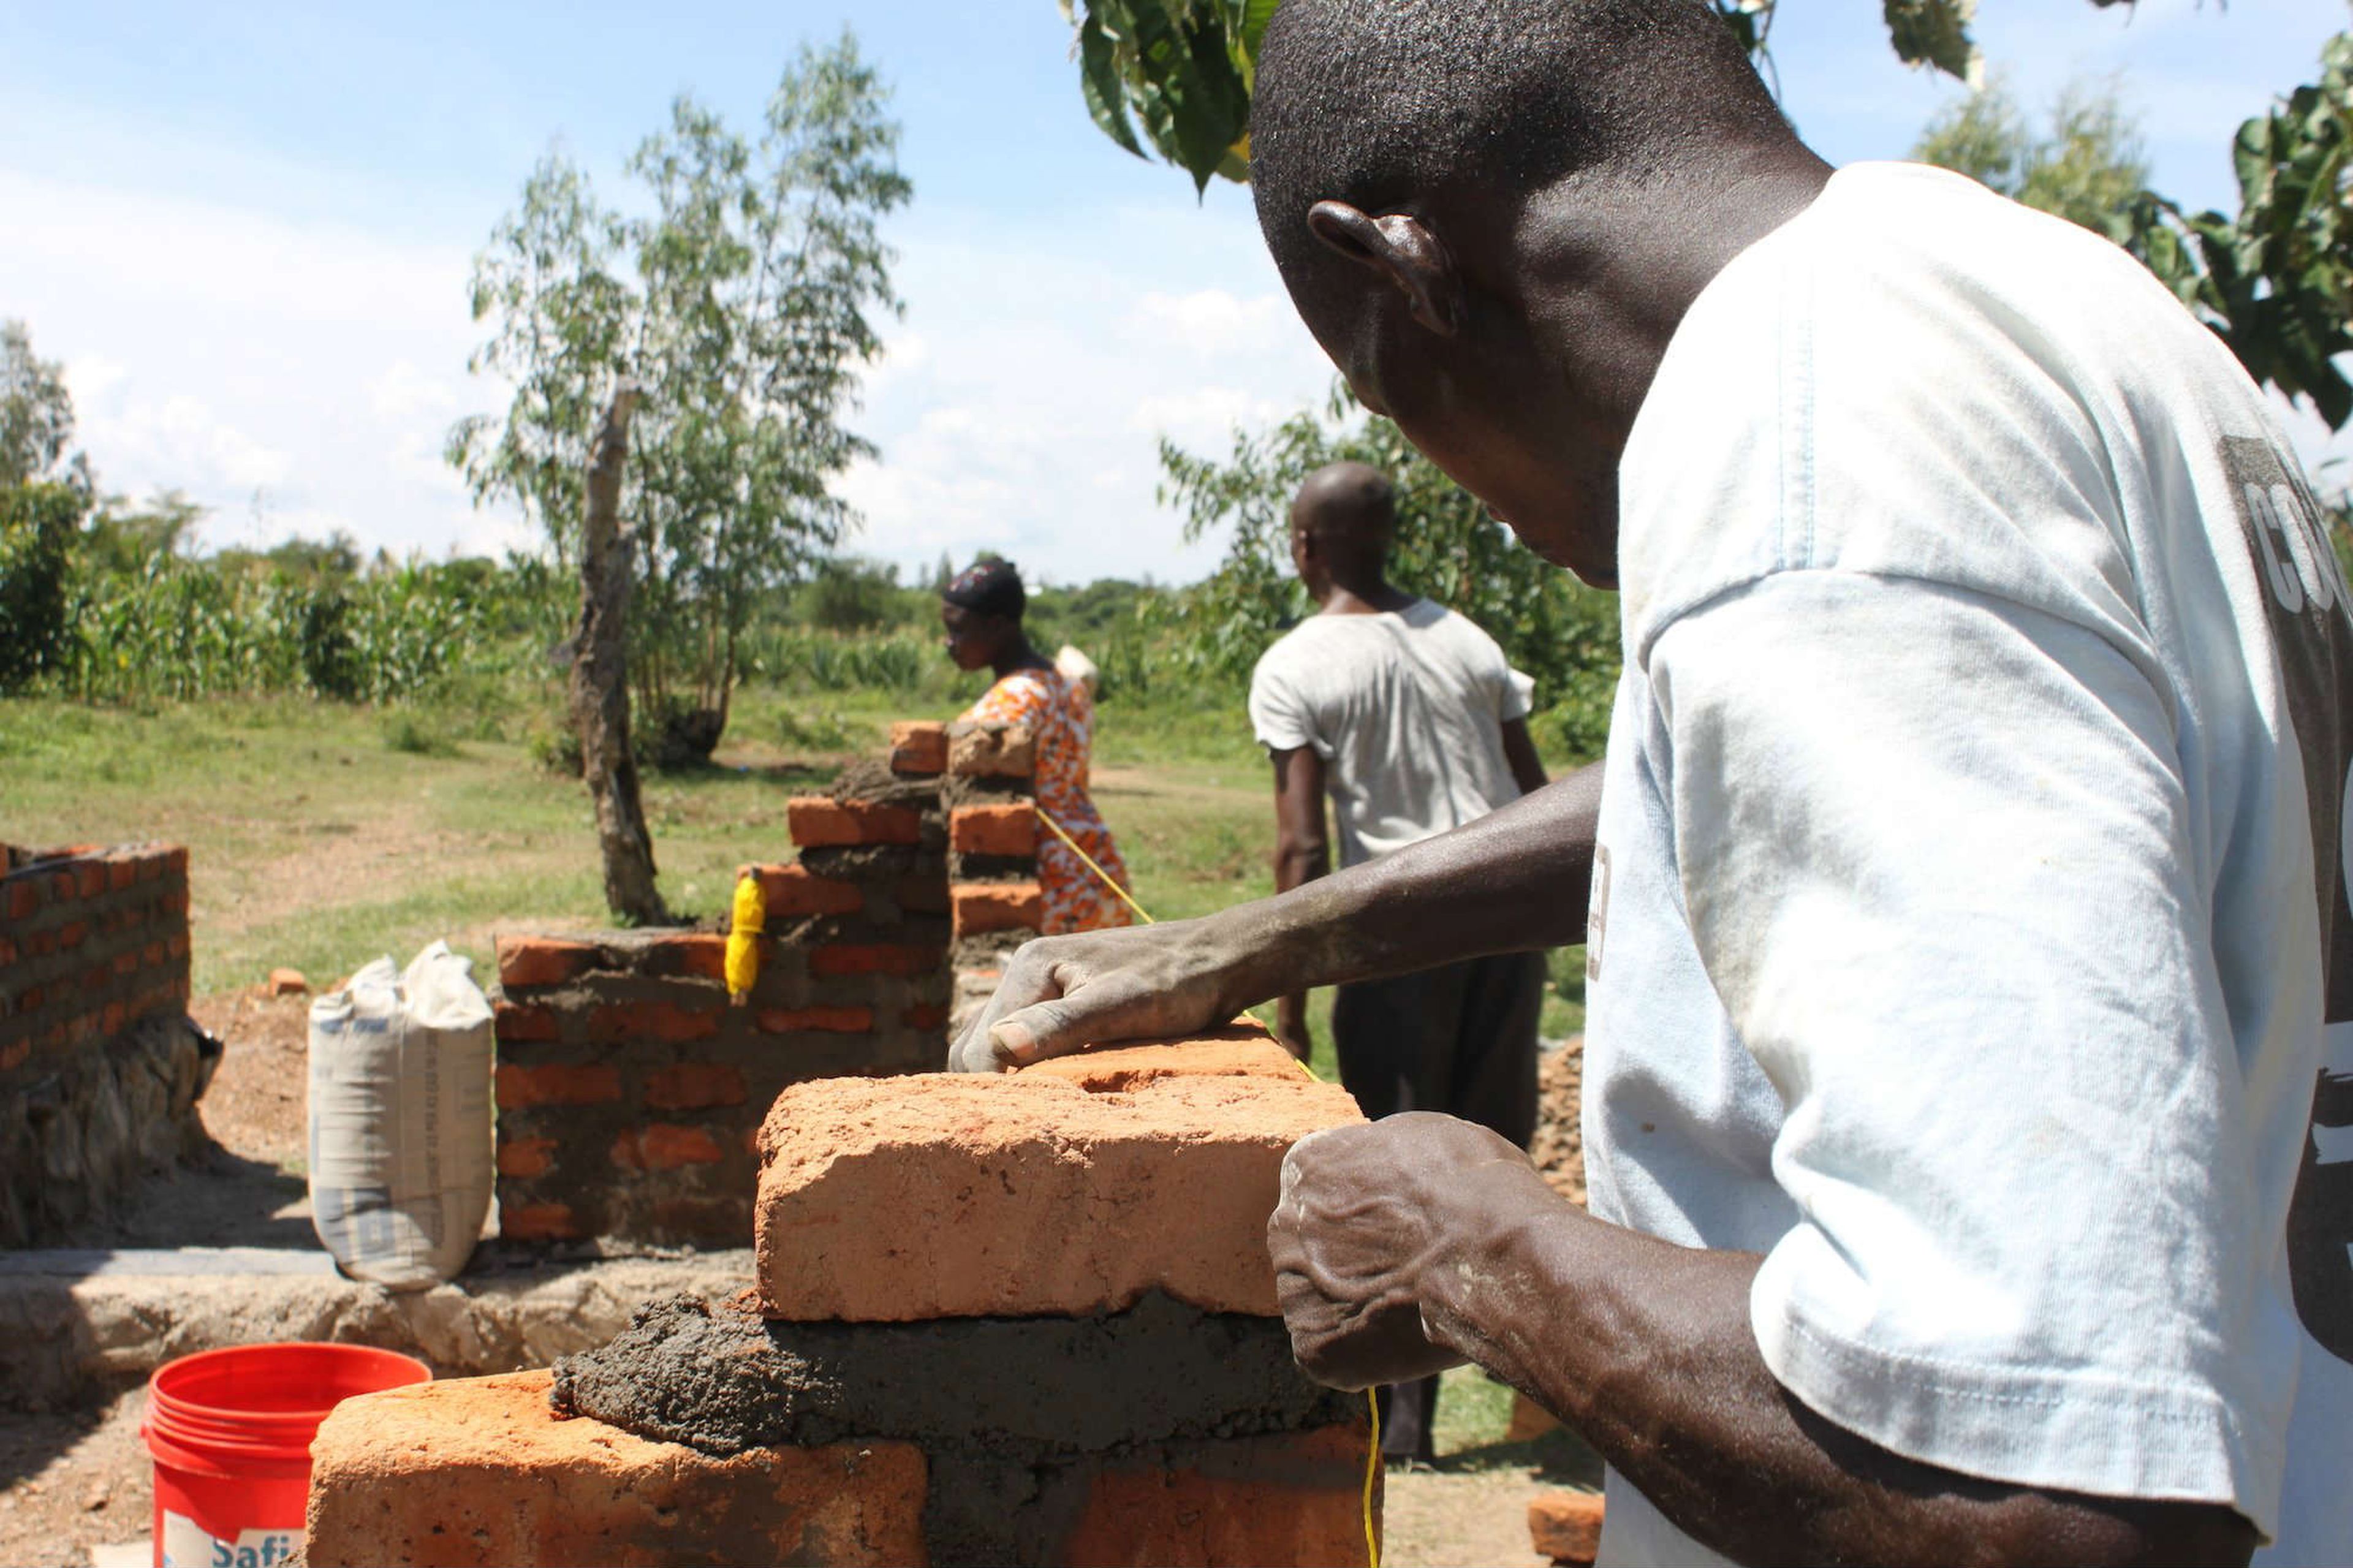 Una aldea en Kenia se beneficia de la renta universal